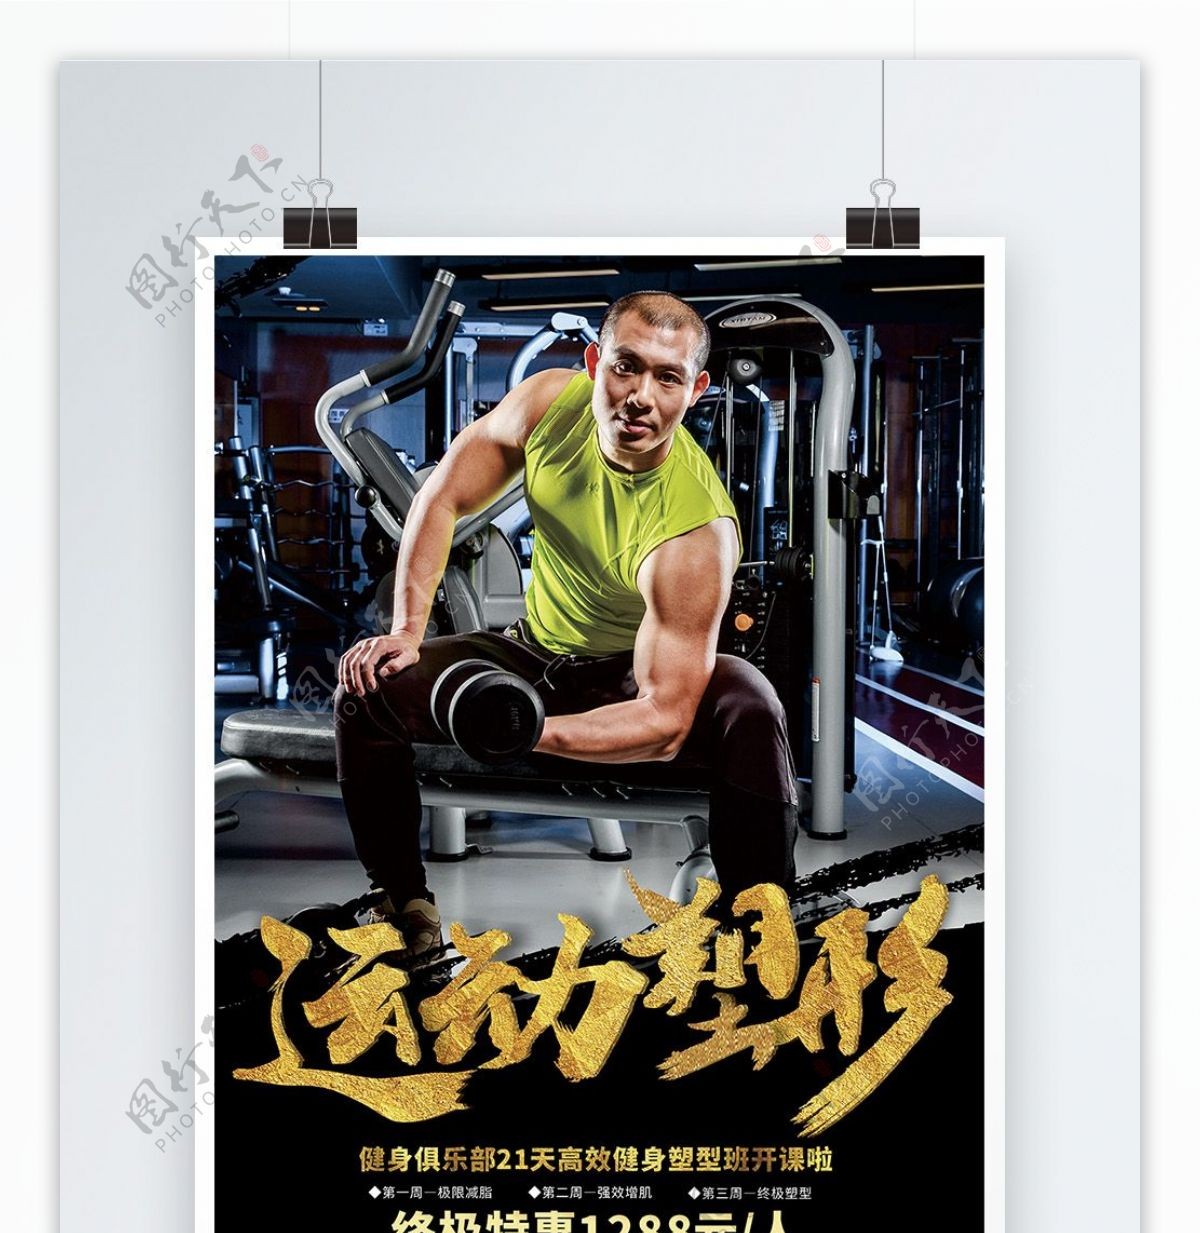 运动塑形健身房宣传海报